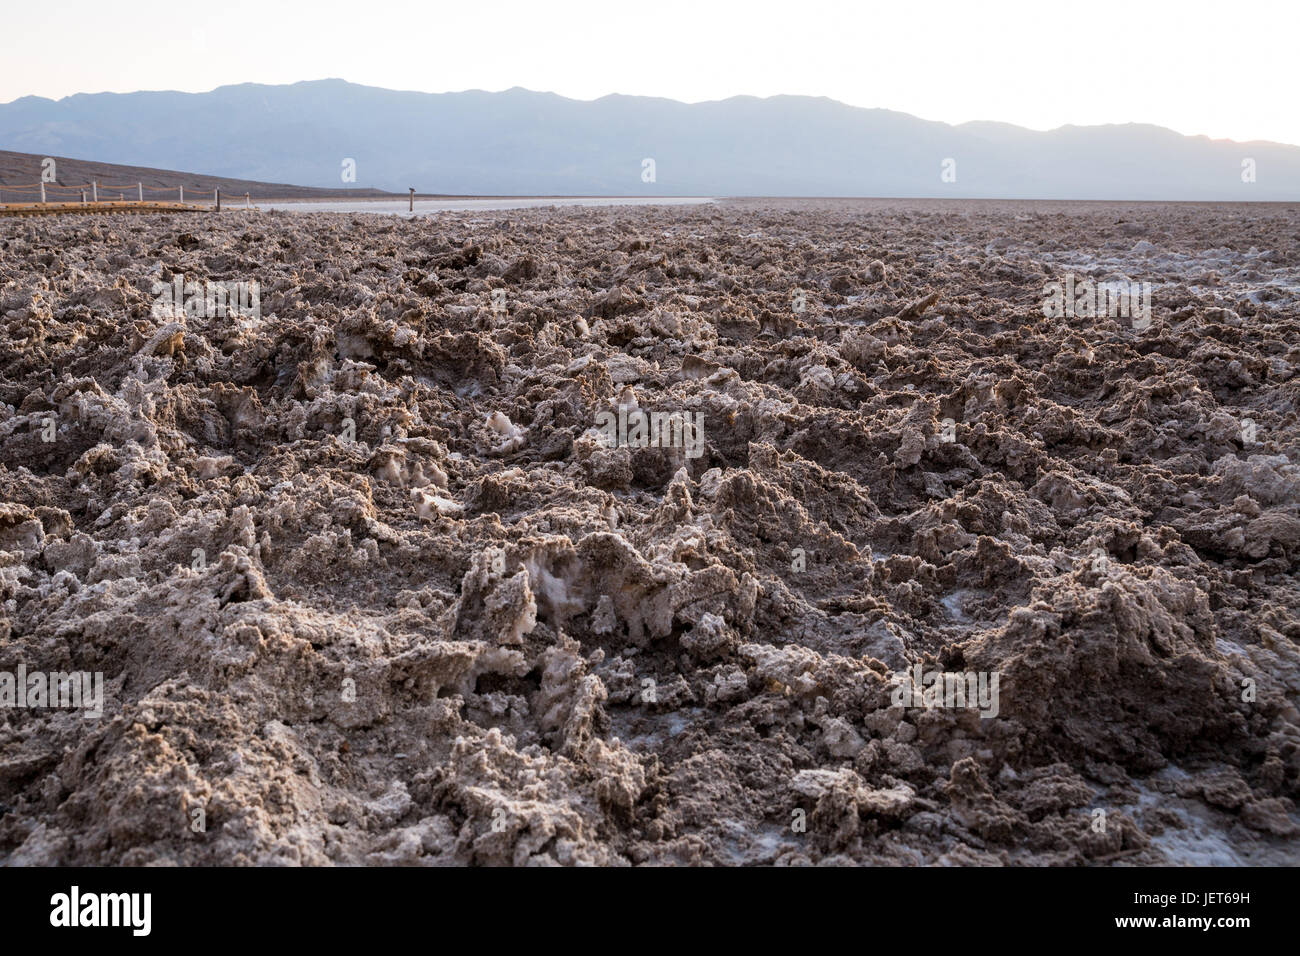 USA, Californie, la Vallée de la mort est une vallée désertique située dans l'est de la Californie. C'est la région la plus basse, la plus sèche et la plus chaude d'Amérique du Nord. Mauvais bassin d'eau Banque D'Images